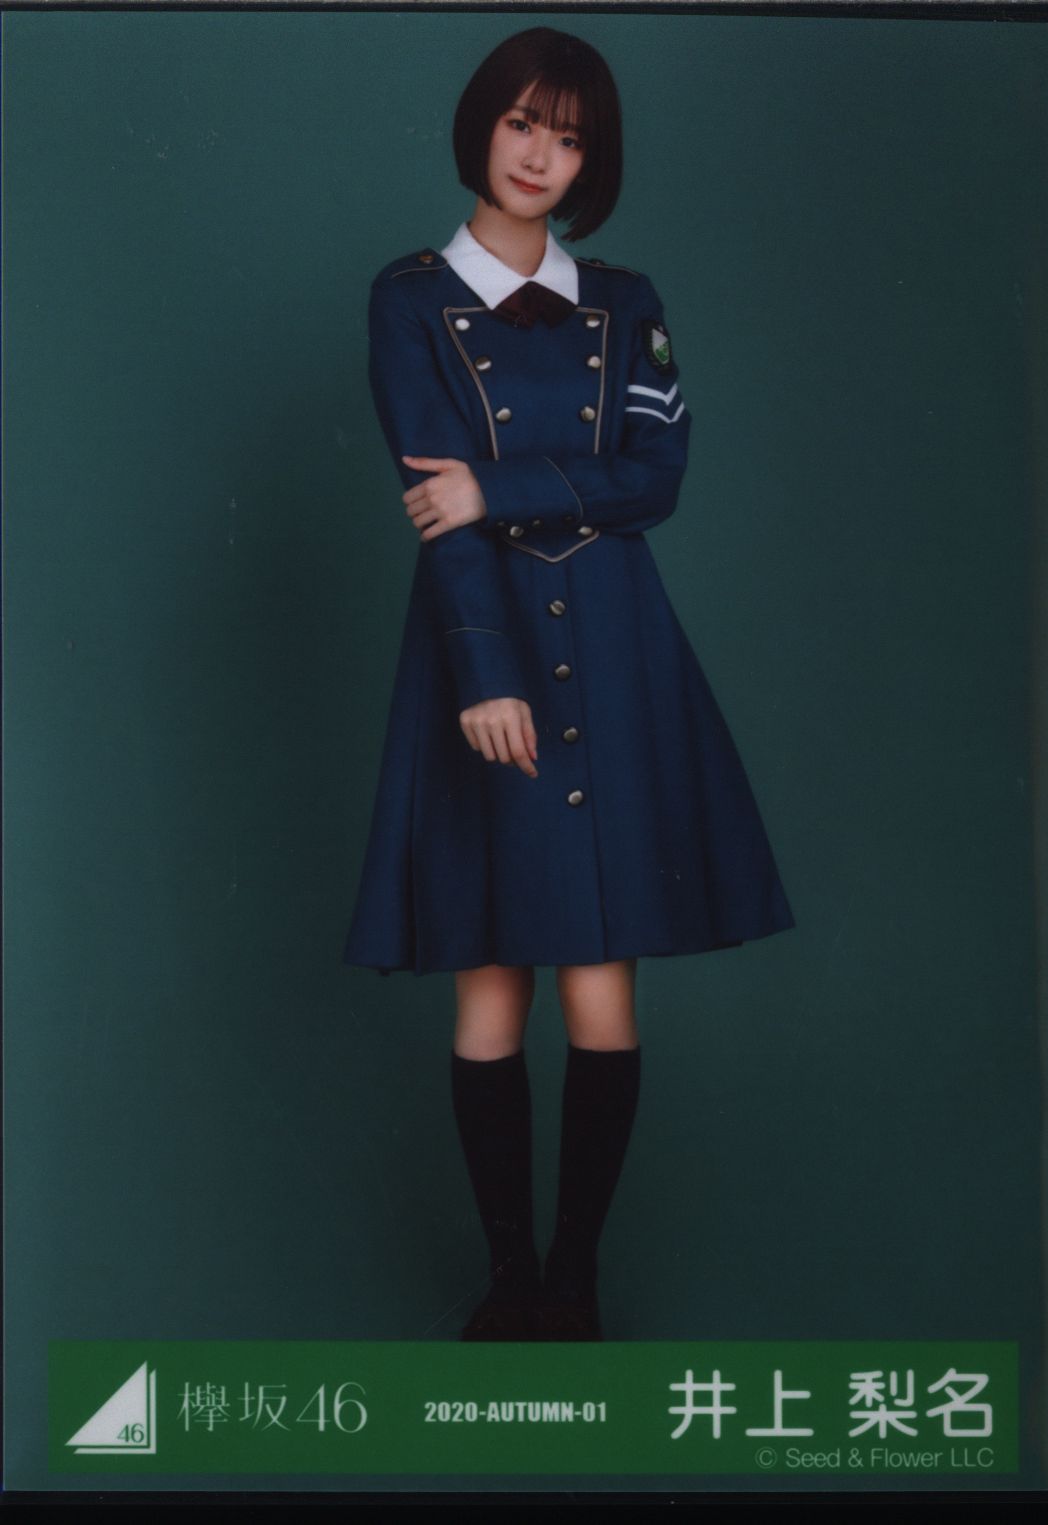 欅坂46 二期生 サイレントマジョリティー衣装 井上梨名 2020-AUTUMN-01